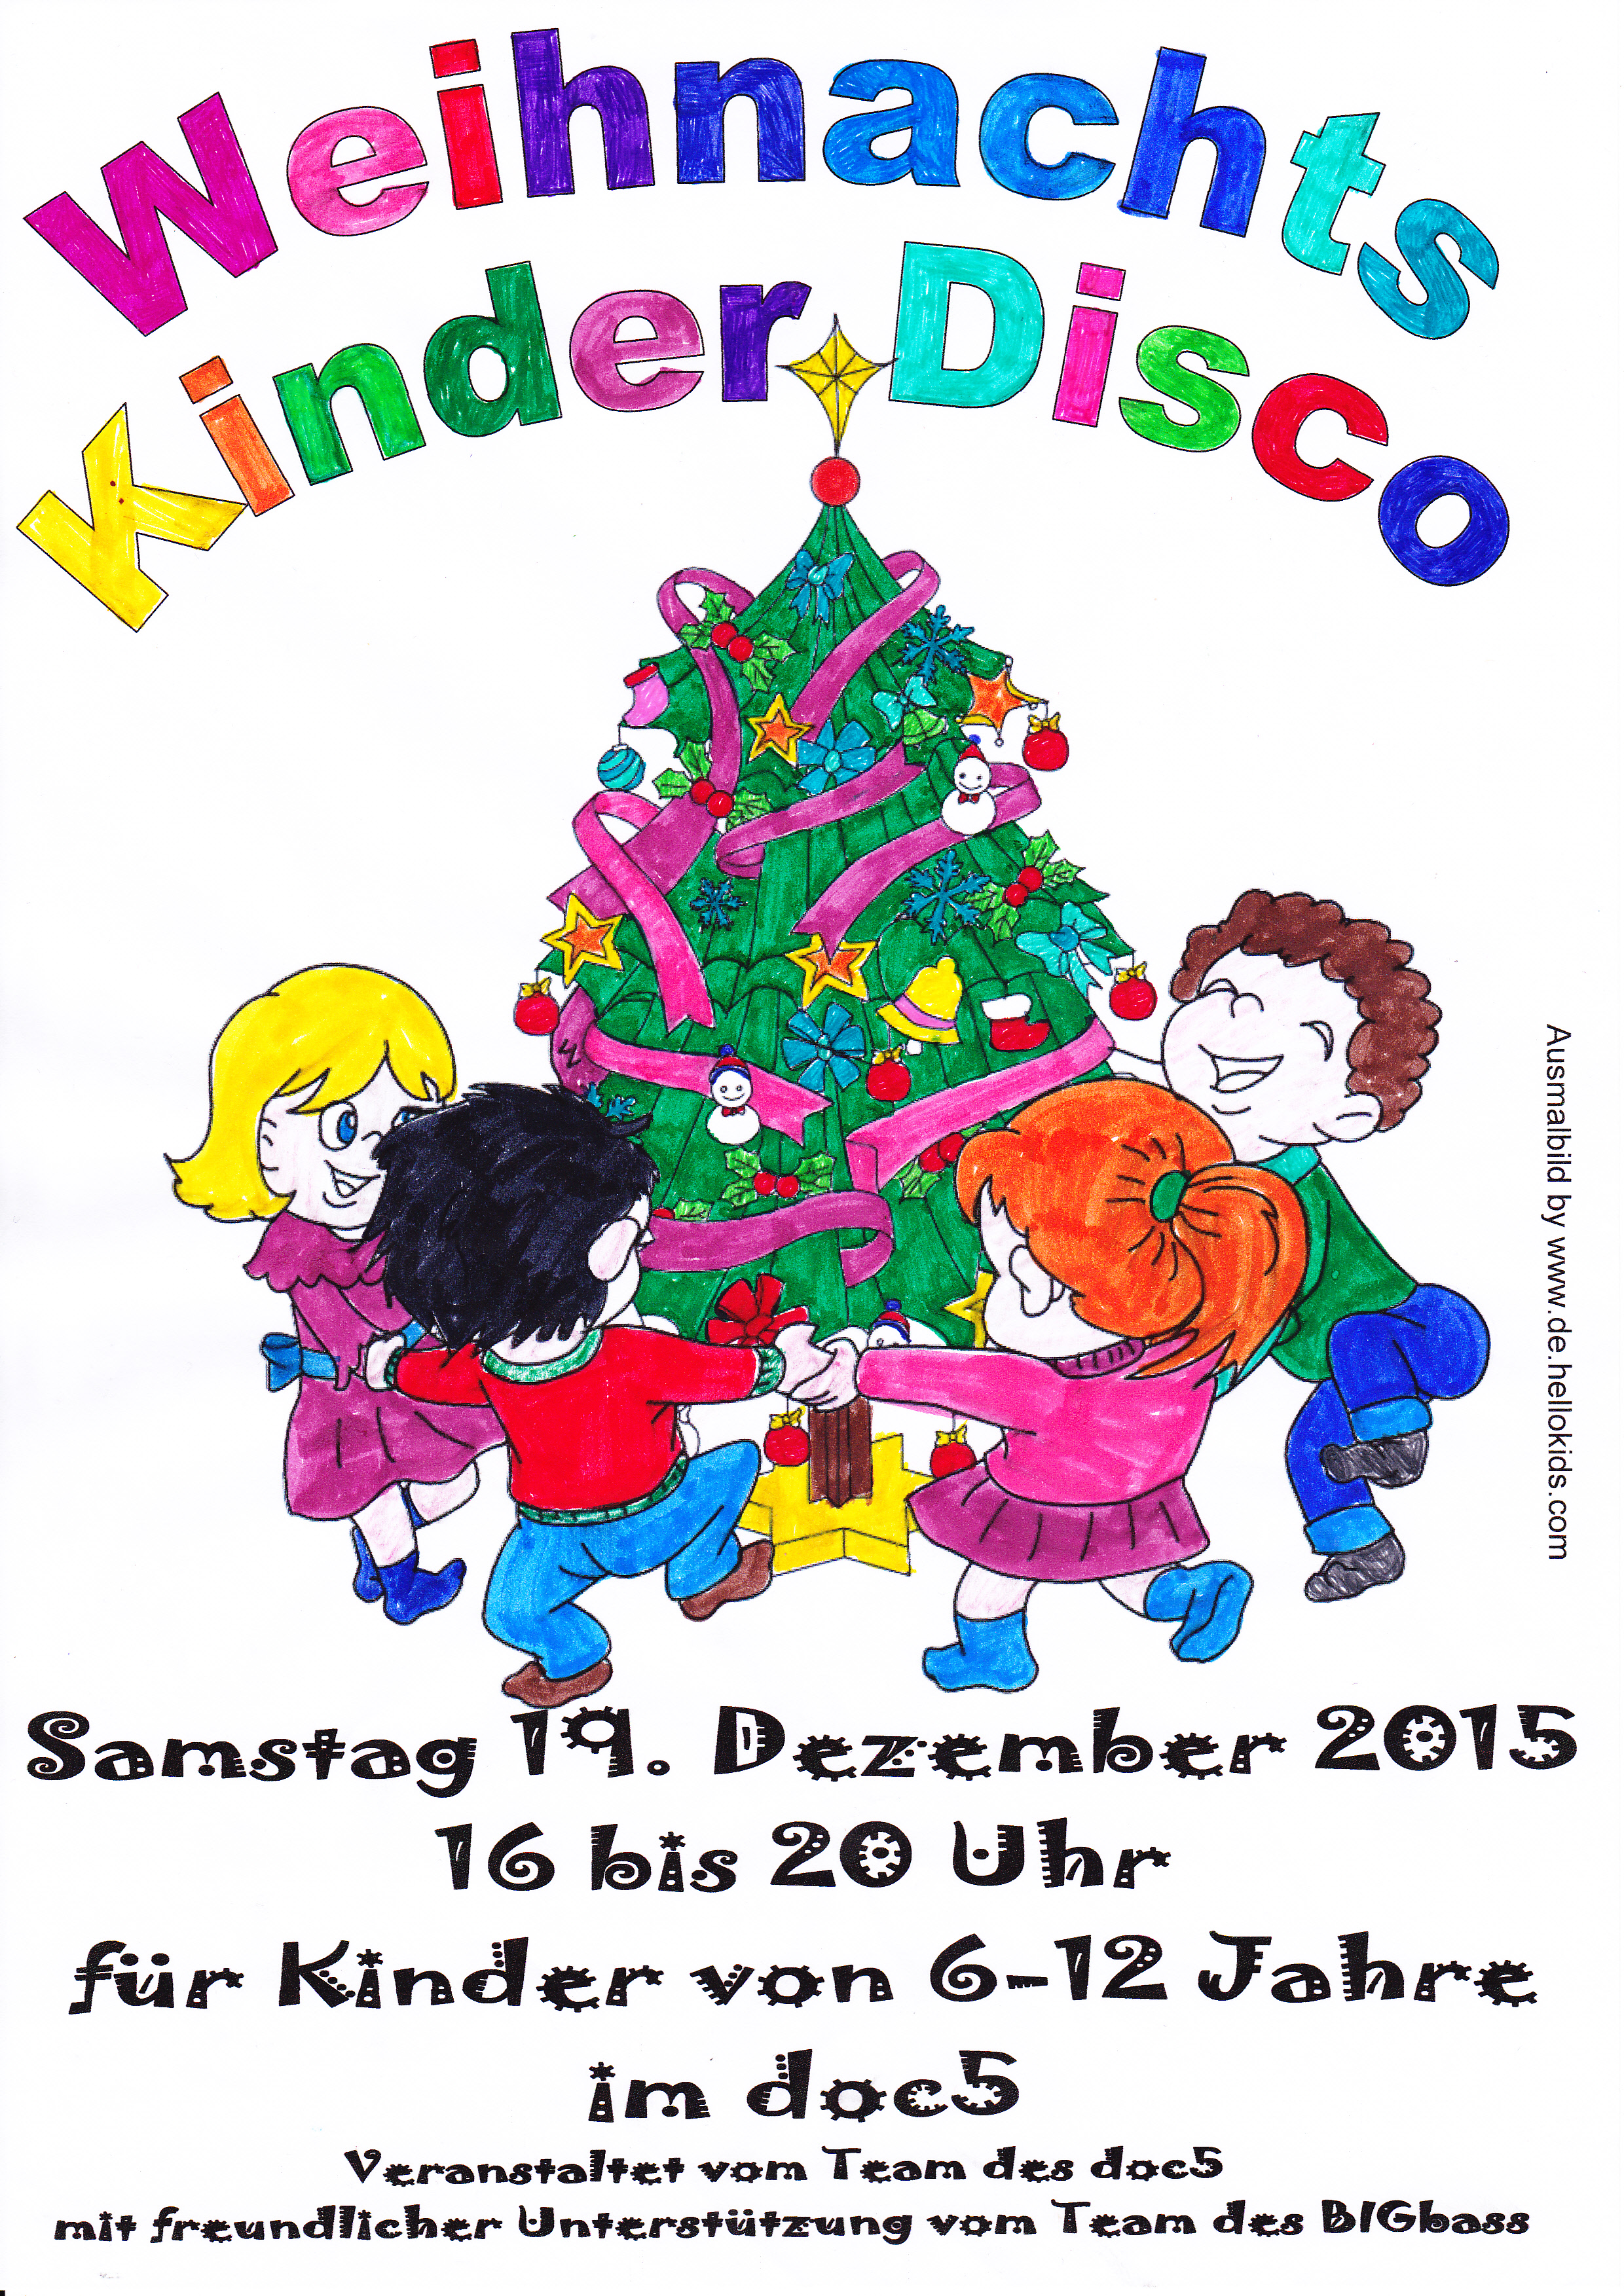 Weihnachts - Kinder - Disco 2015